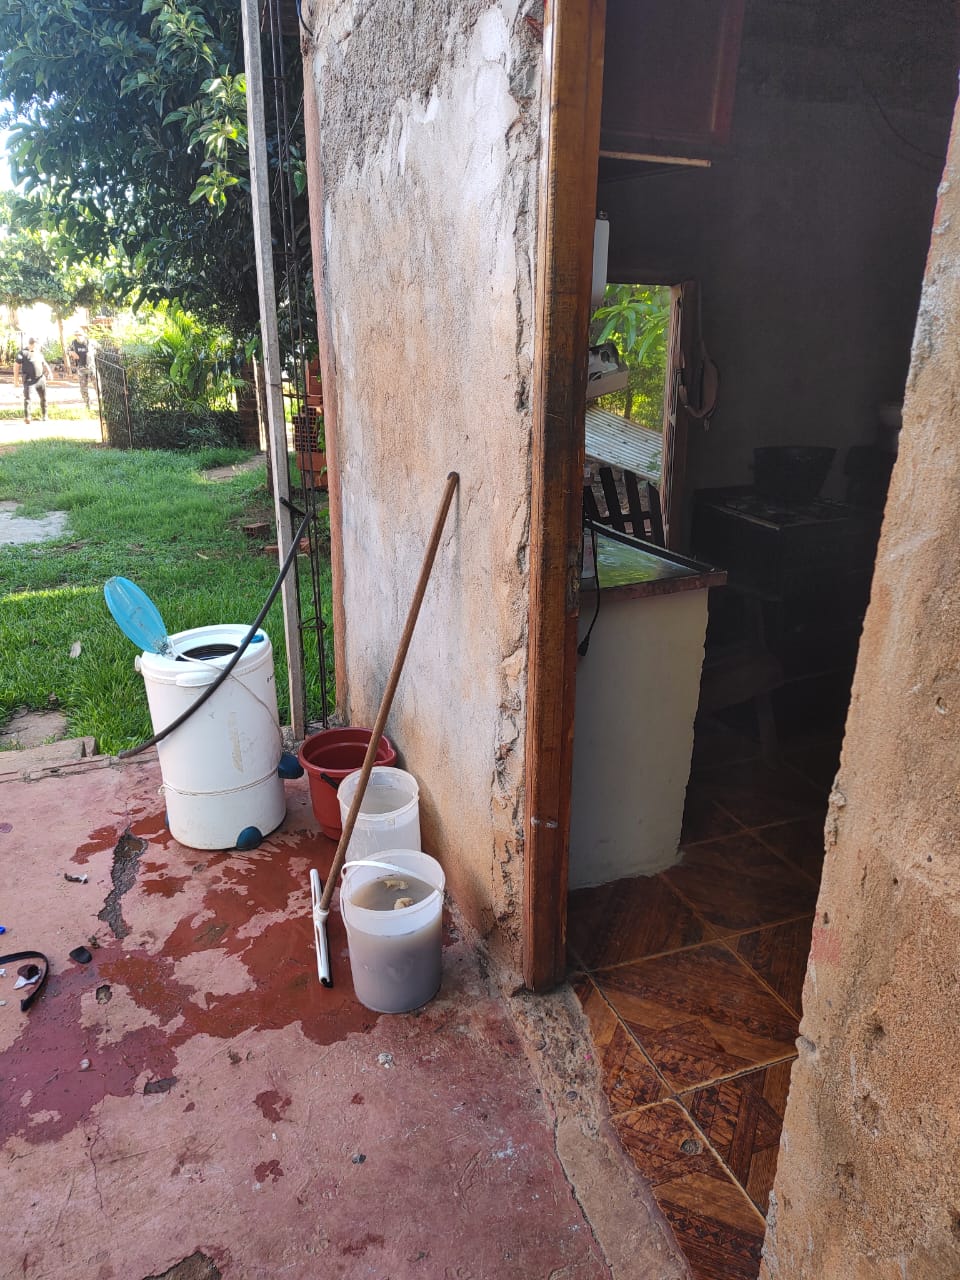 Un joven de 15 años falleció por una descarga eléctrica en Puerto Iguazú